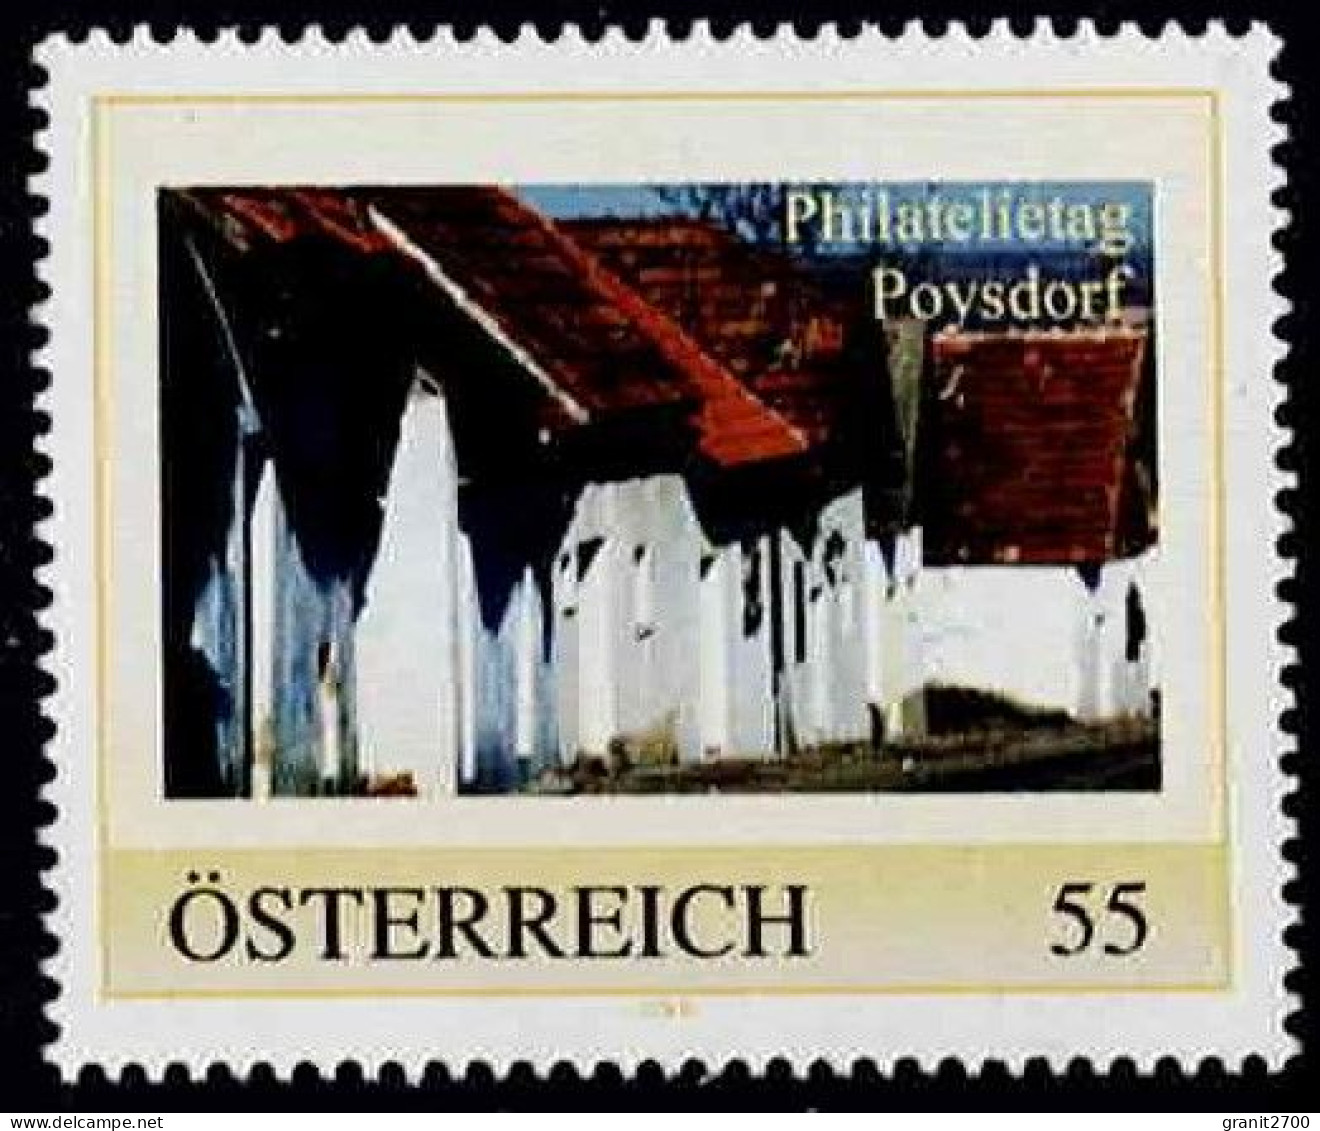 PM  Philatelietag Poysdorf  Ex Bogen Nr.  8025518  Vom 12.1.2010  Postfrisch - Personalisierte Briefmarken